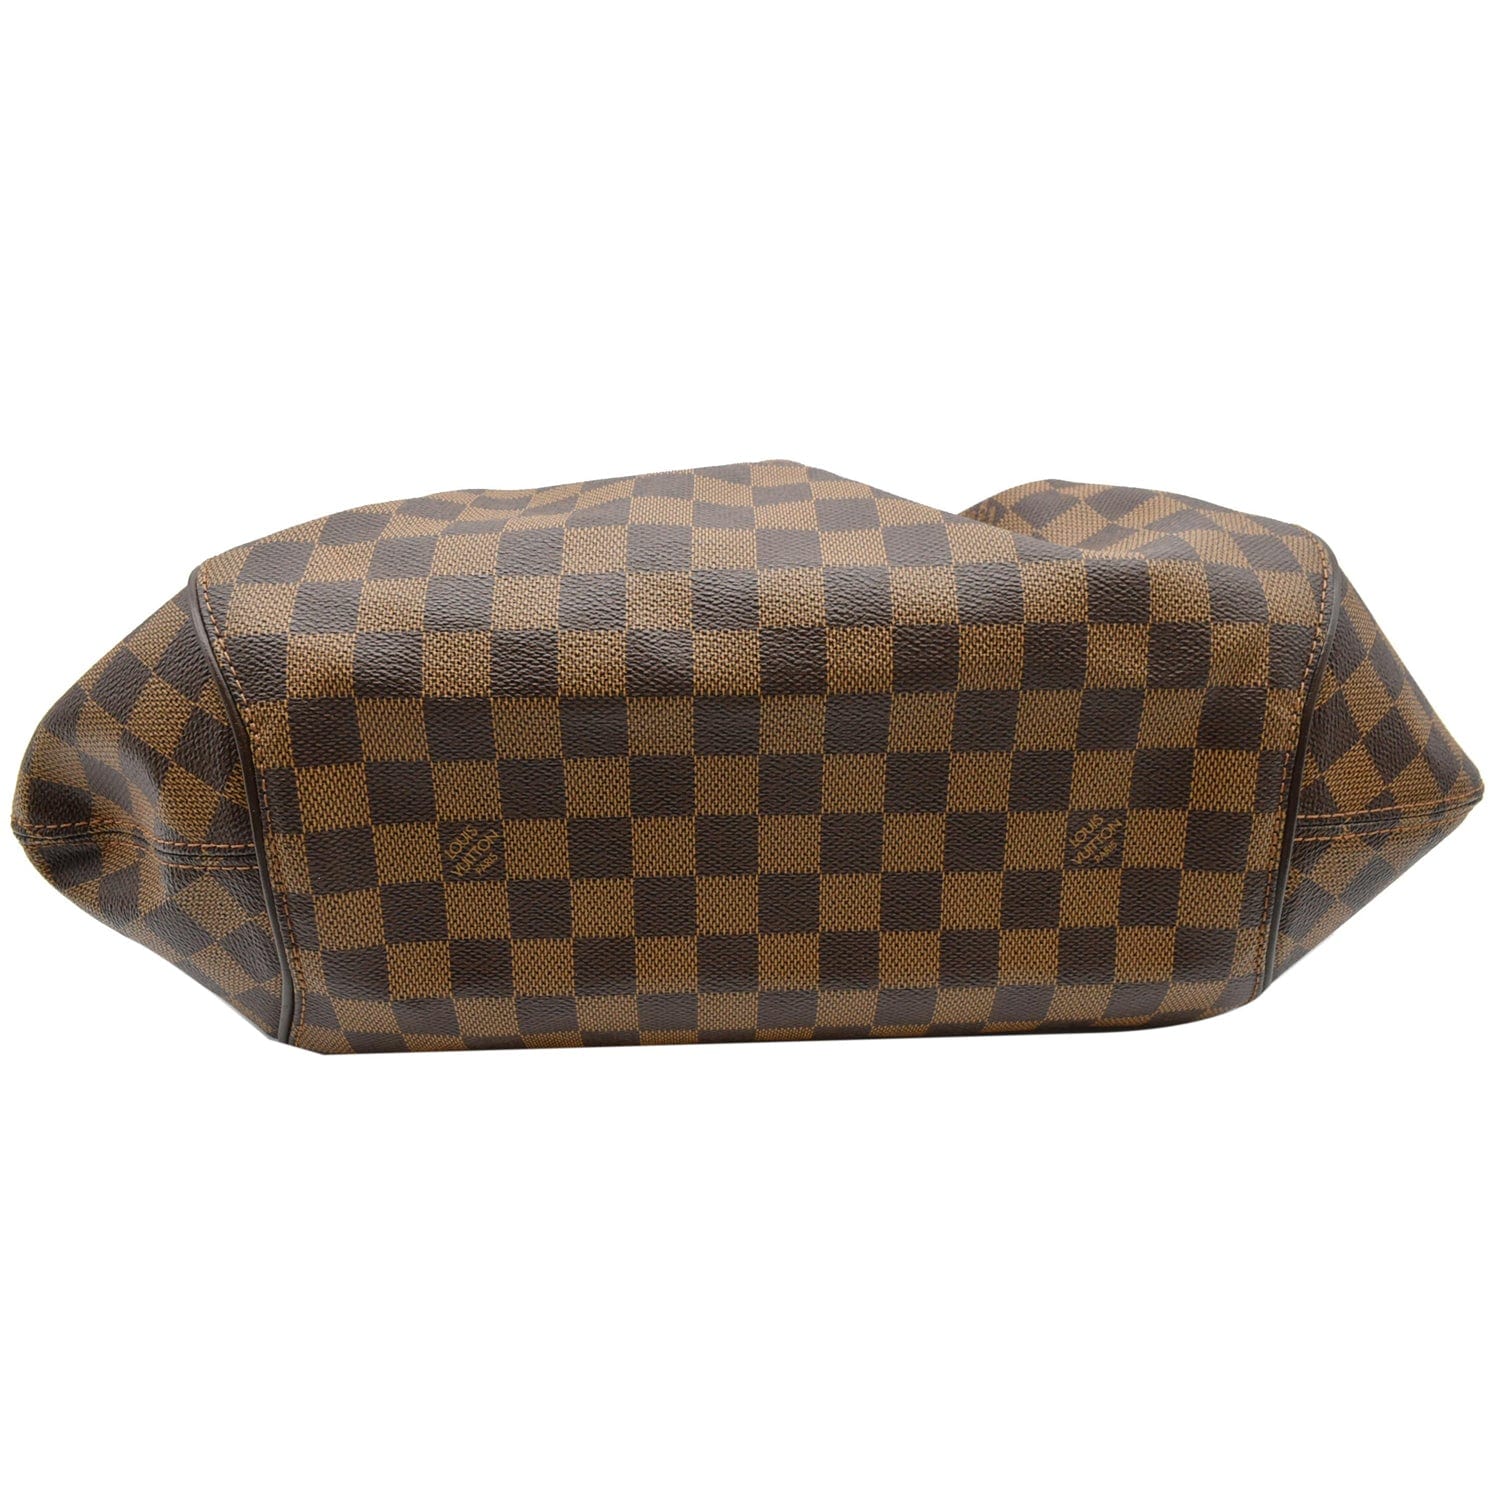 Louis Vuitton Sistina Handbag 363891